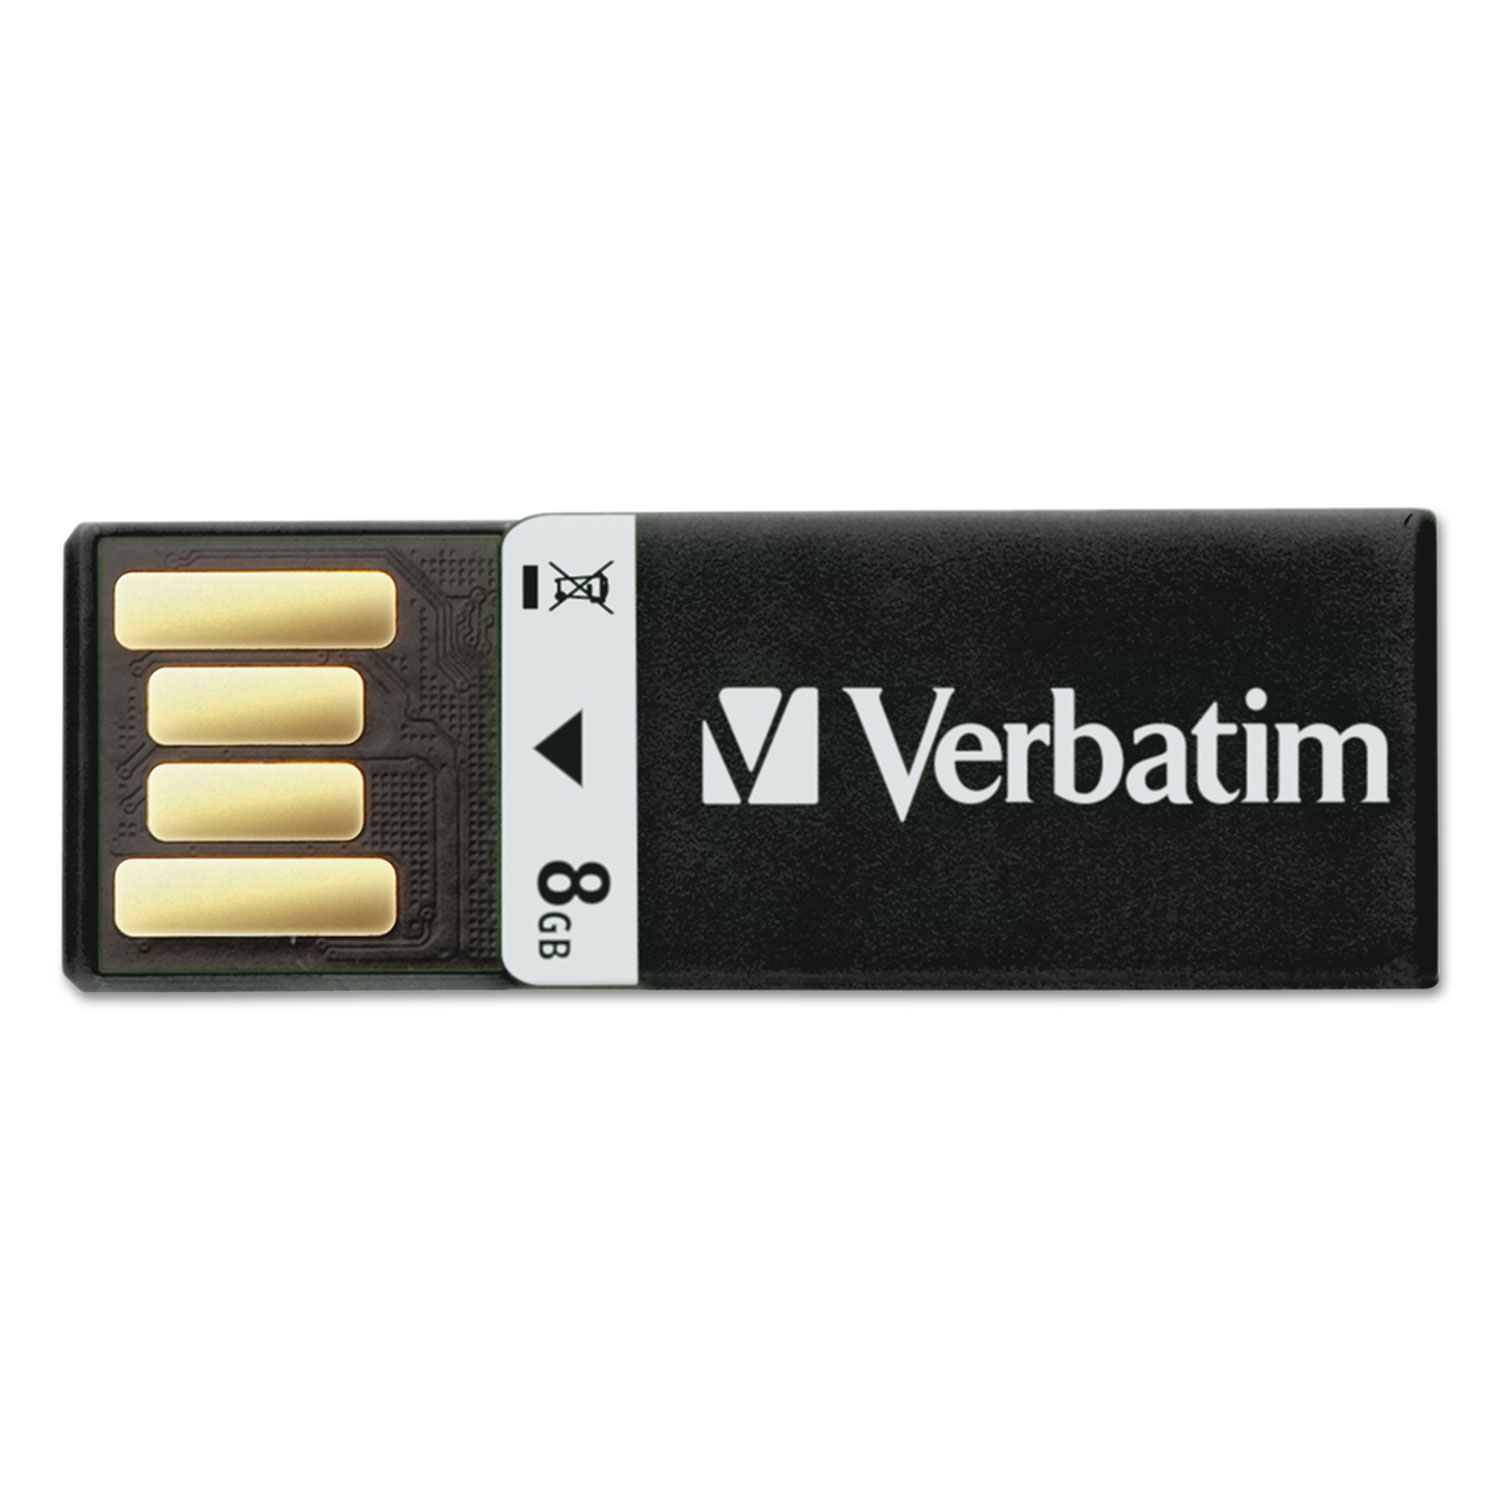 Clip-It USB 2.0 Flash Drive, 8GB, Black